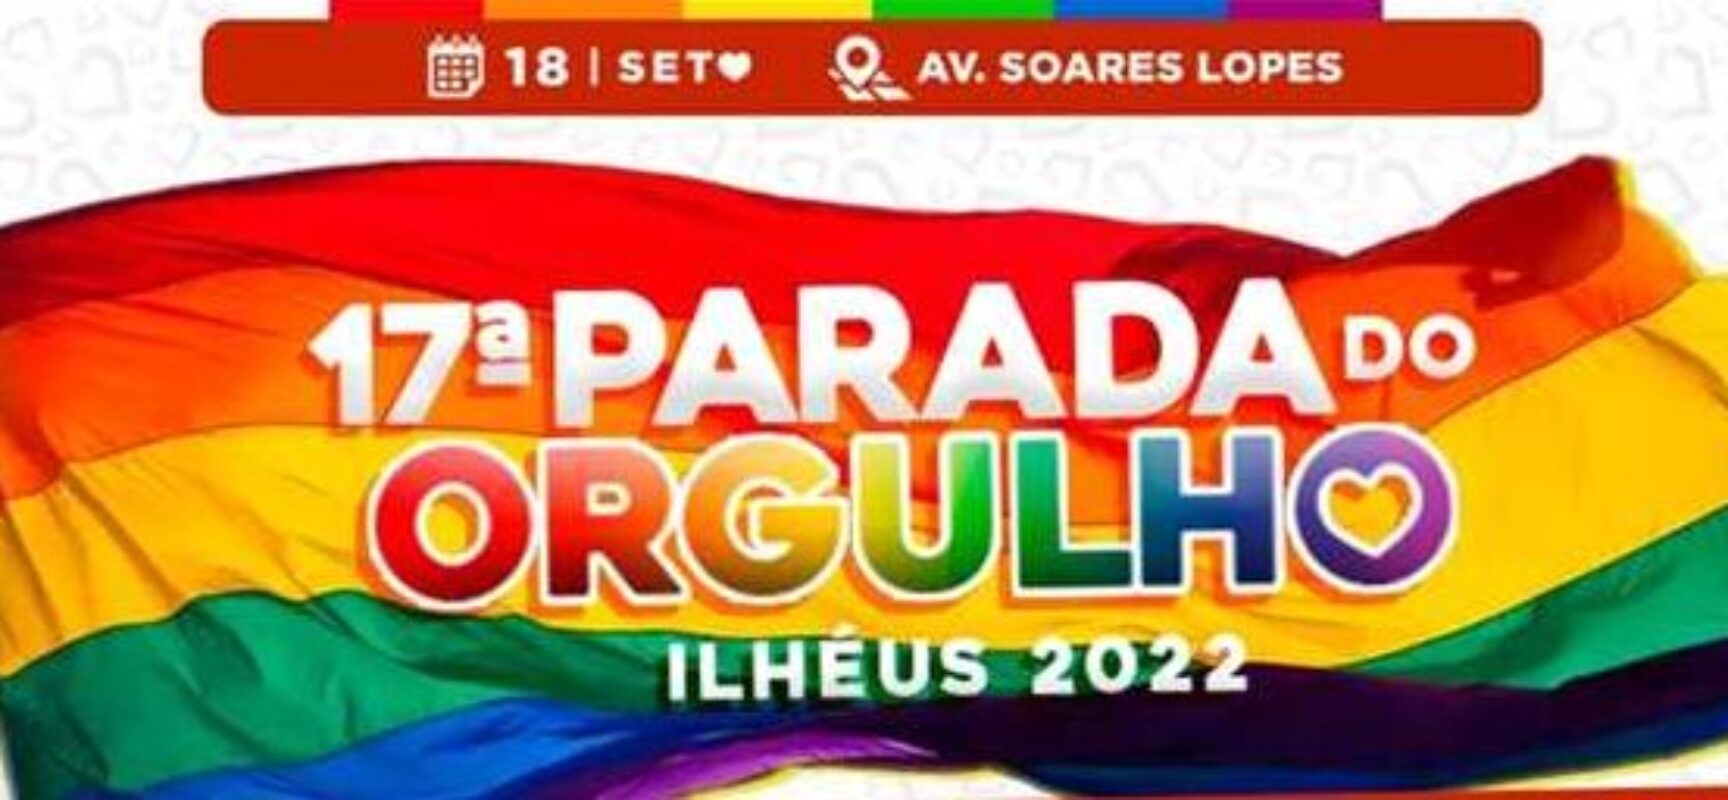 Parada do Orgulho: trânsito de Ilhéus será alterado neste domingo (18); confira a programação